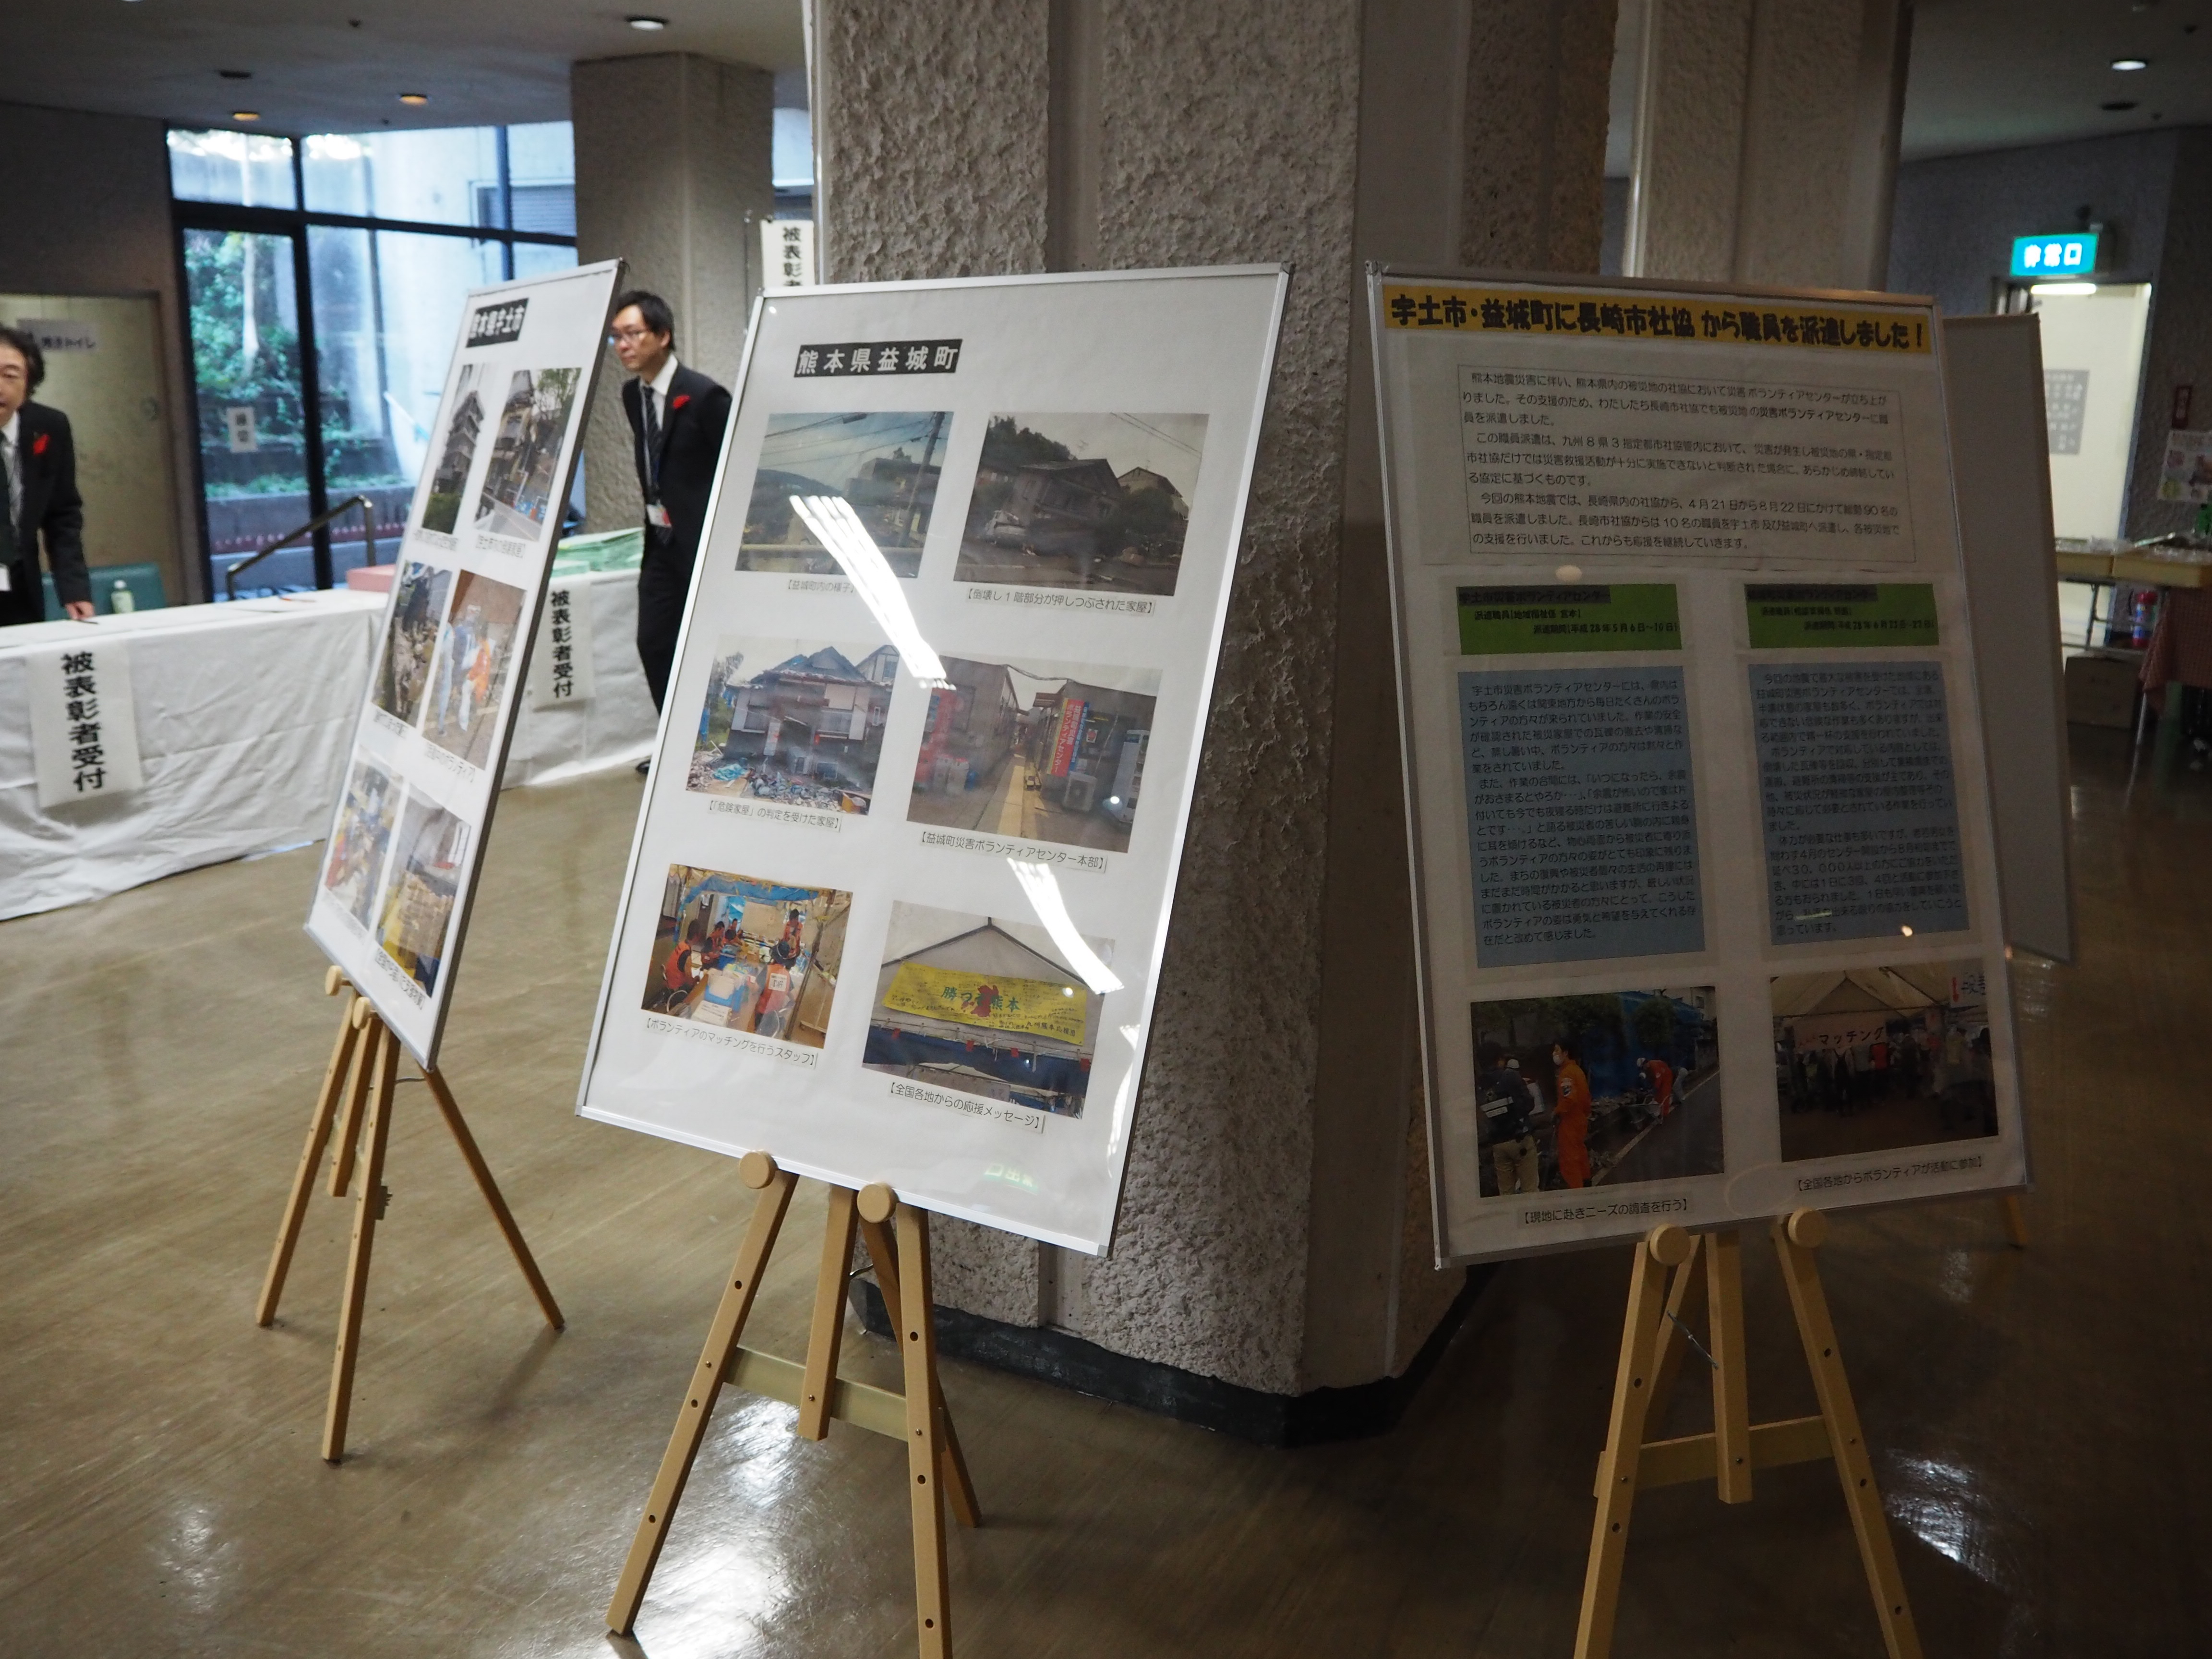 熊本地震に関連するパネル展示。